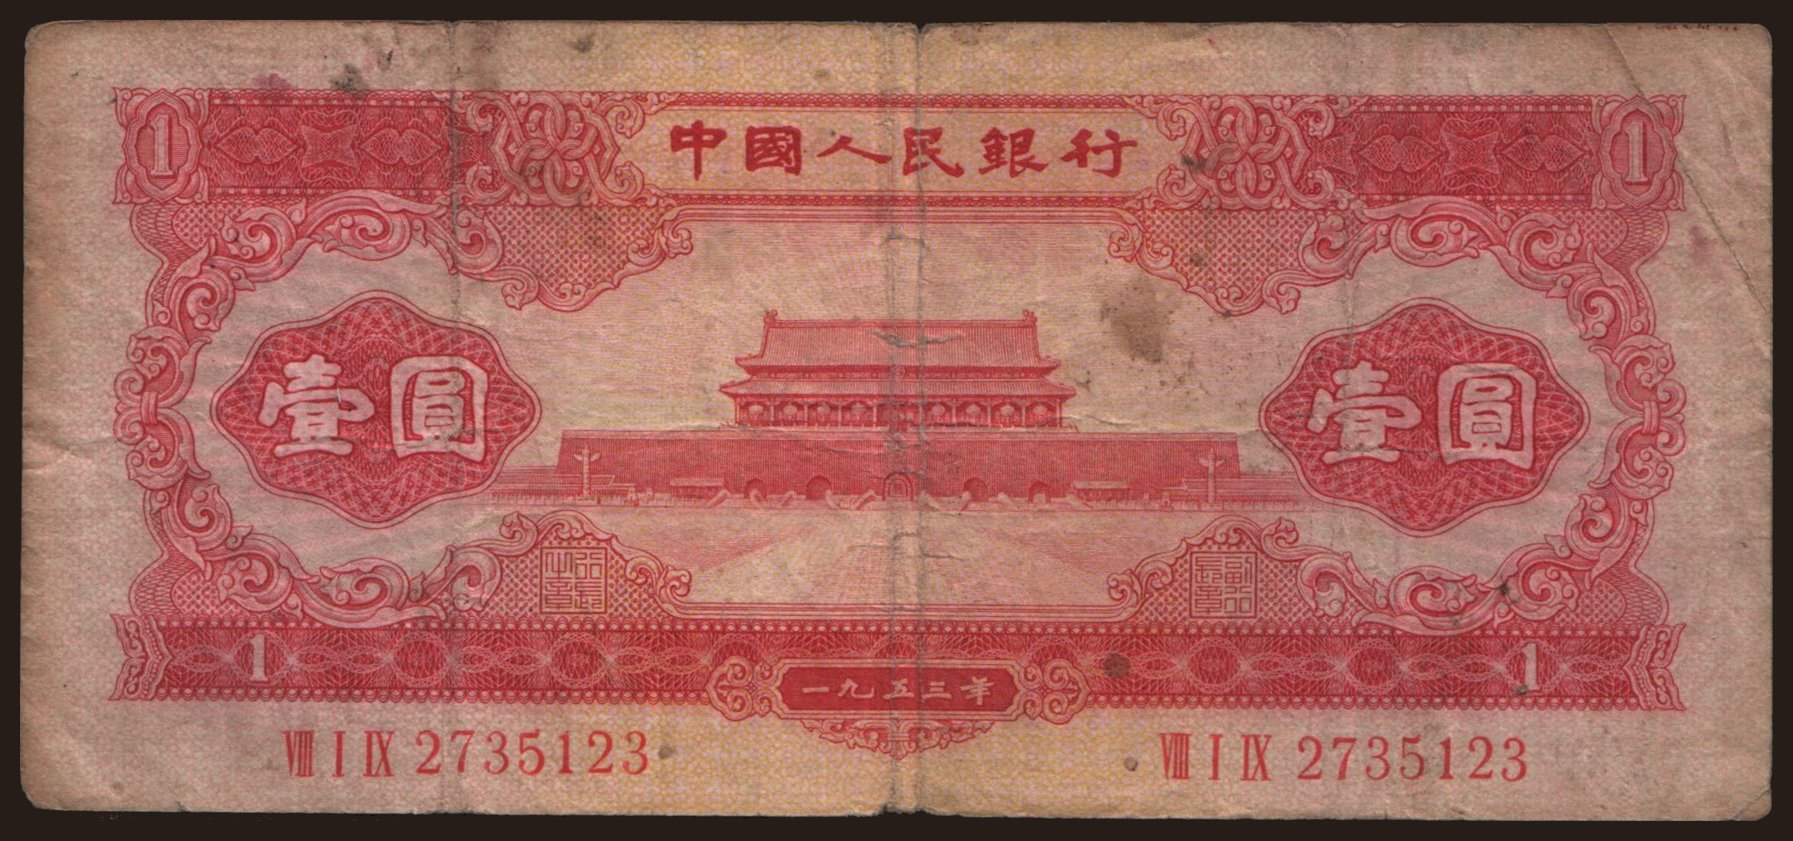 1 yuan, 1953